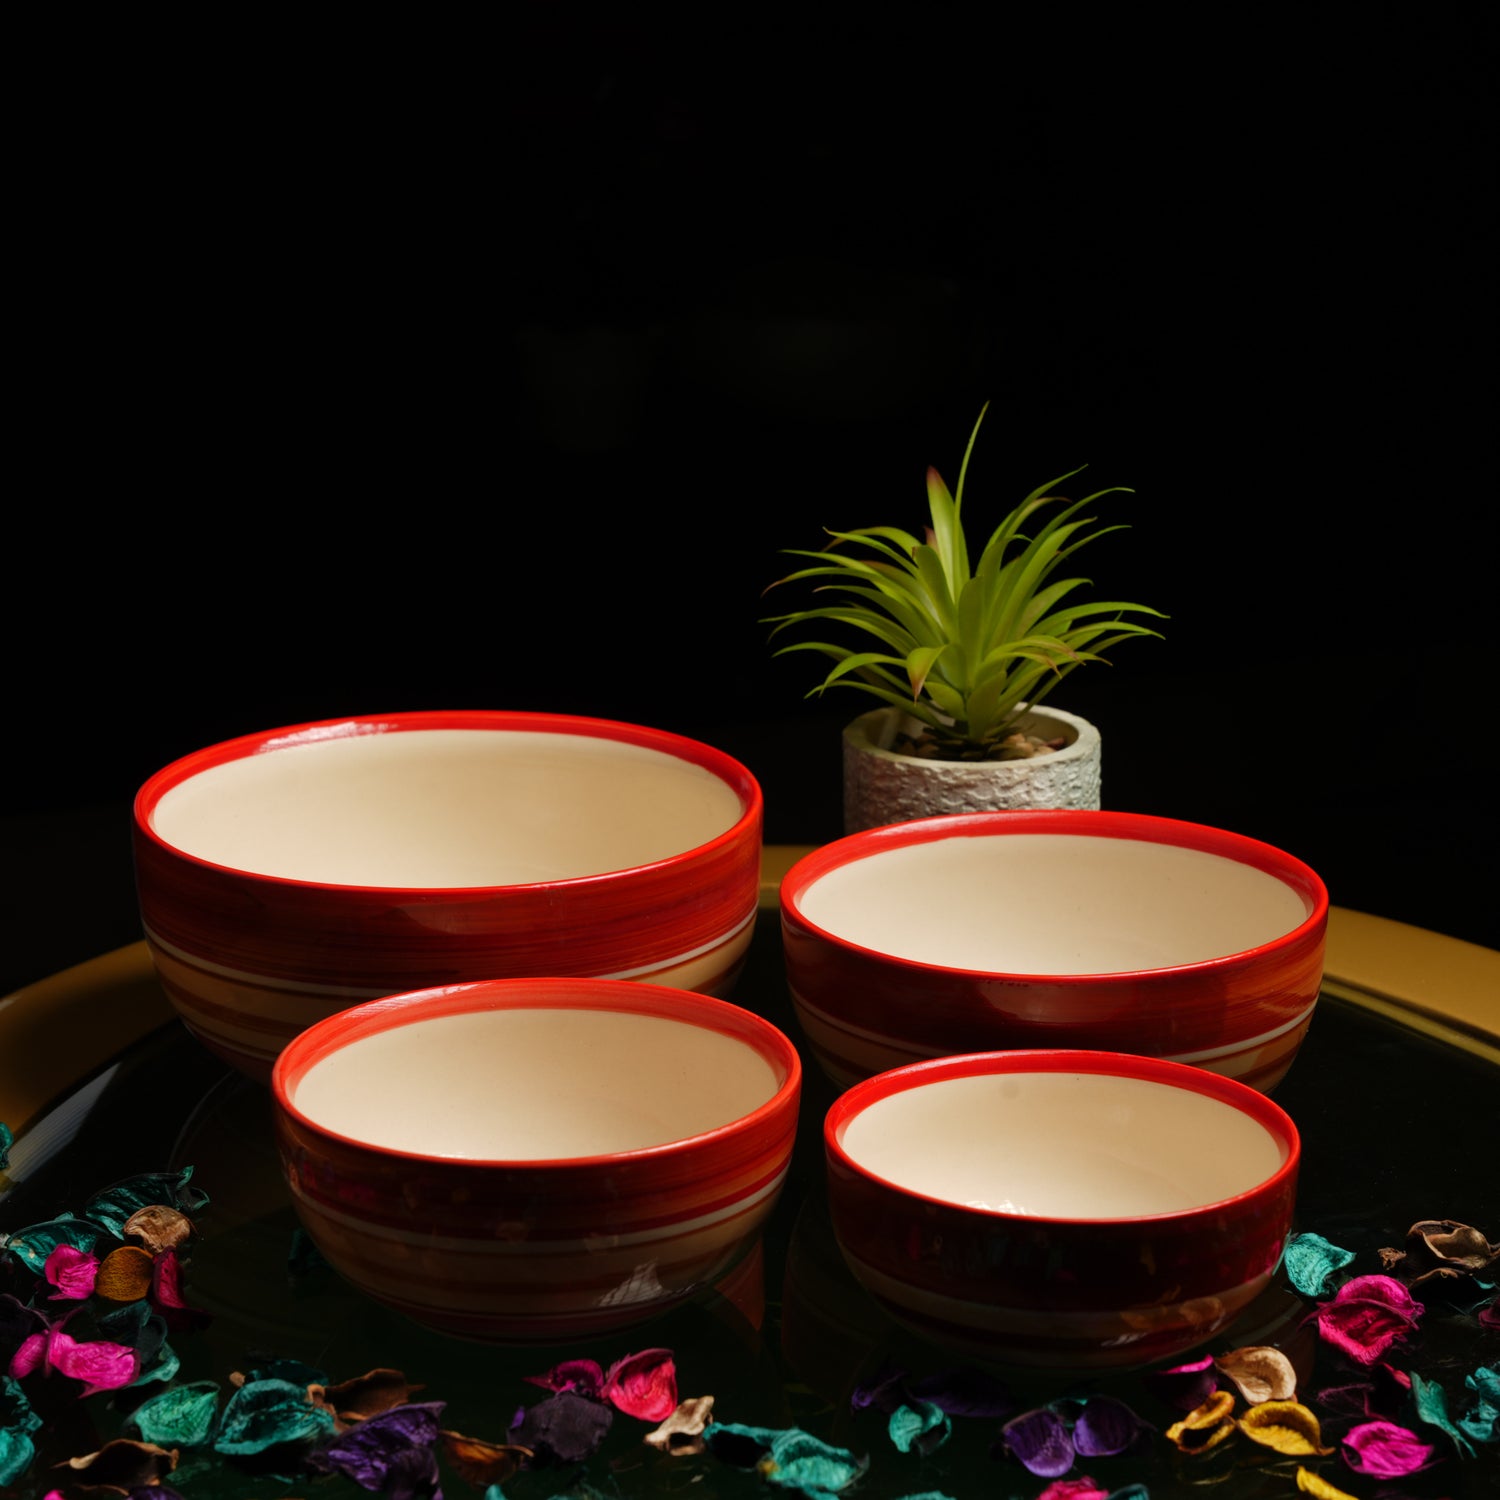 Caffeine Ceramic Handmade Orange Illusion Serving Bowl (Set of 4) - Caffeine Premium Stoneware